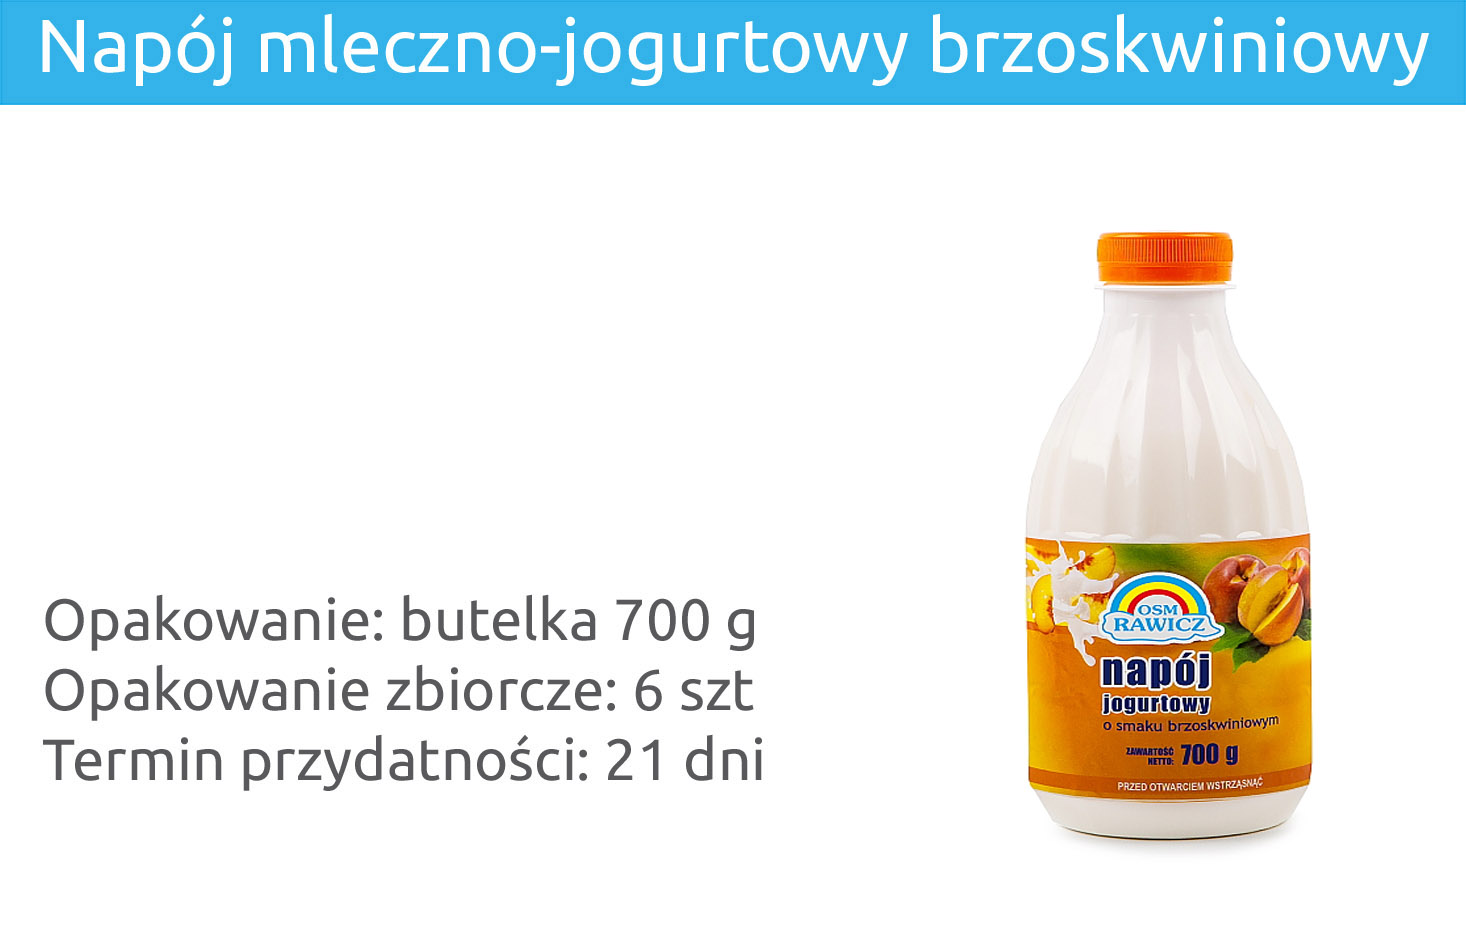 Napój mleczno-jogurtowy brzoskwiniowy